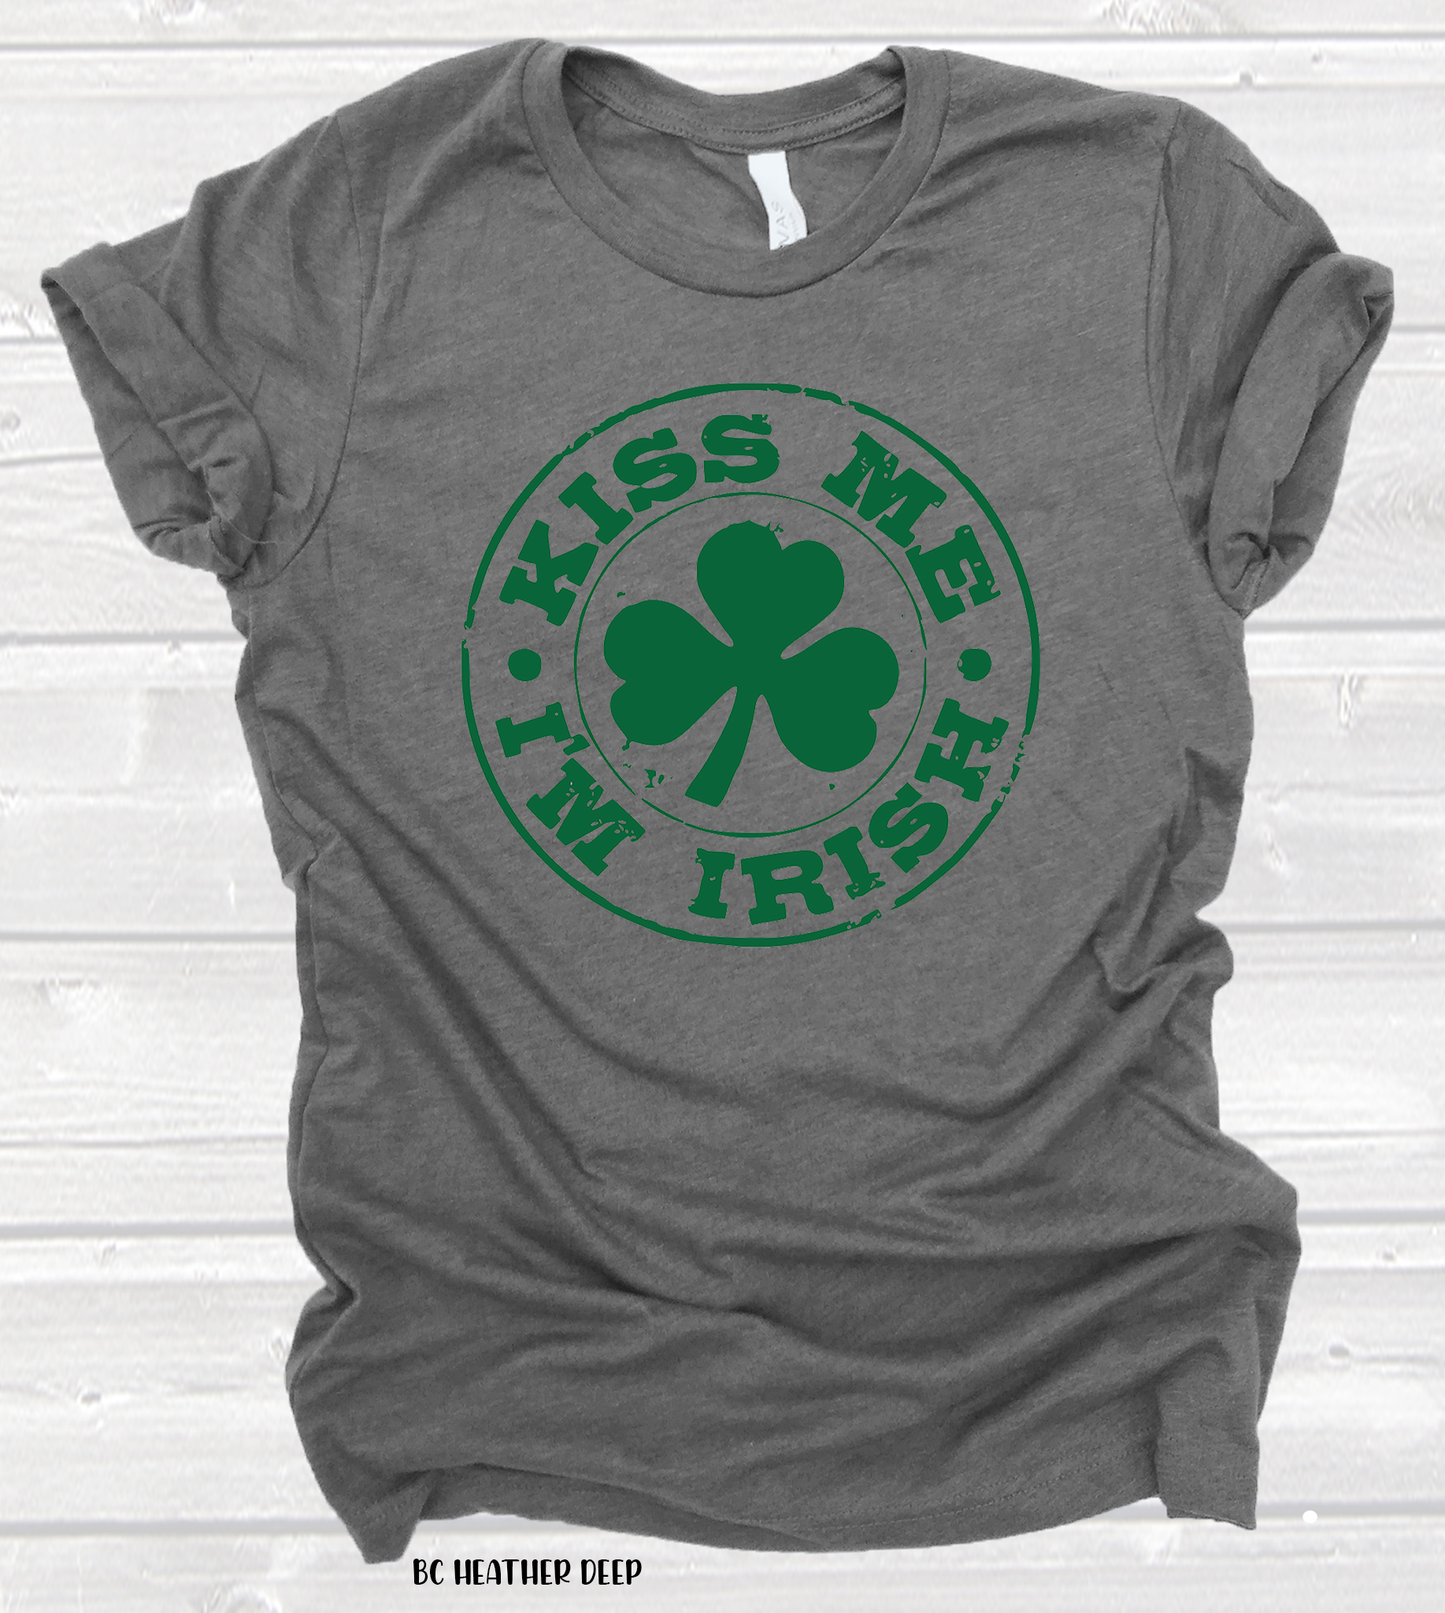 Kiss Me I'm Irish (325°)